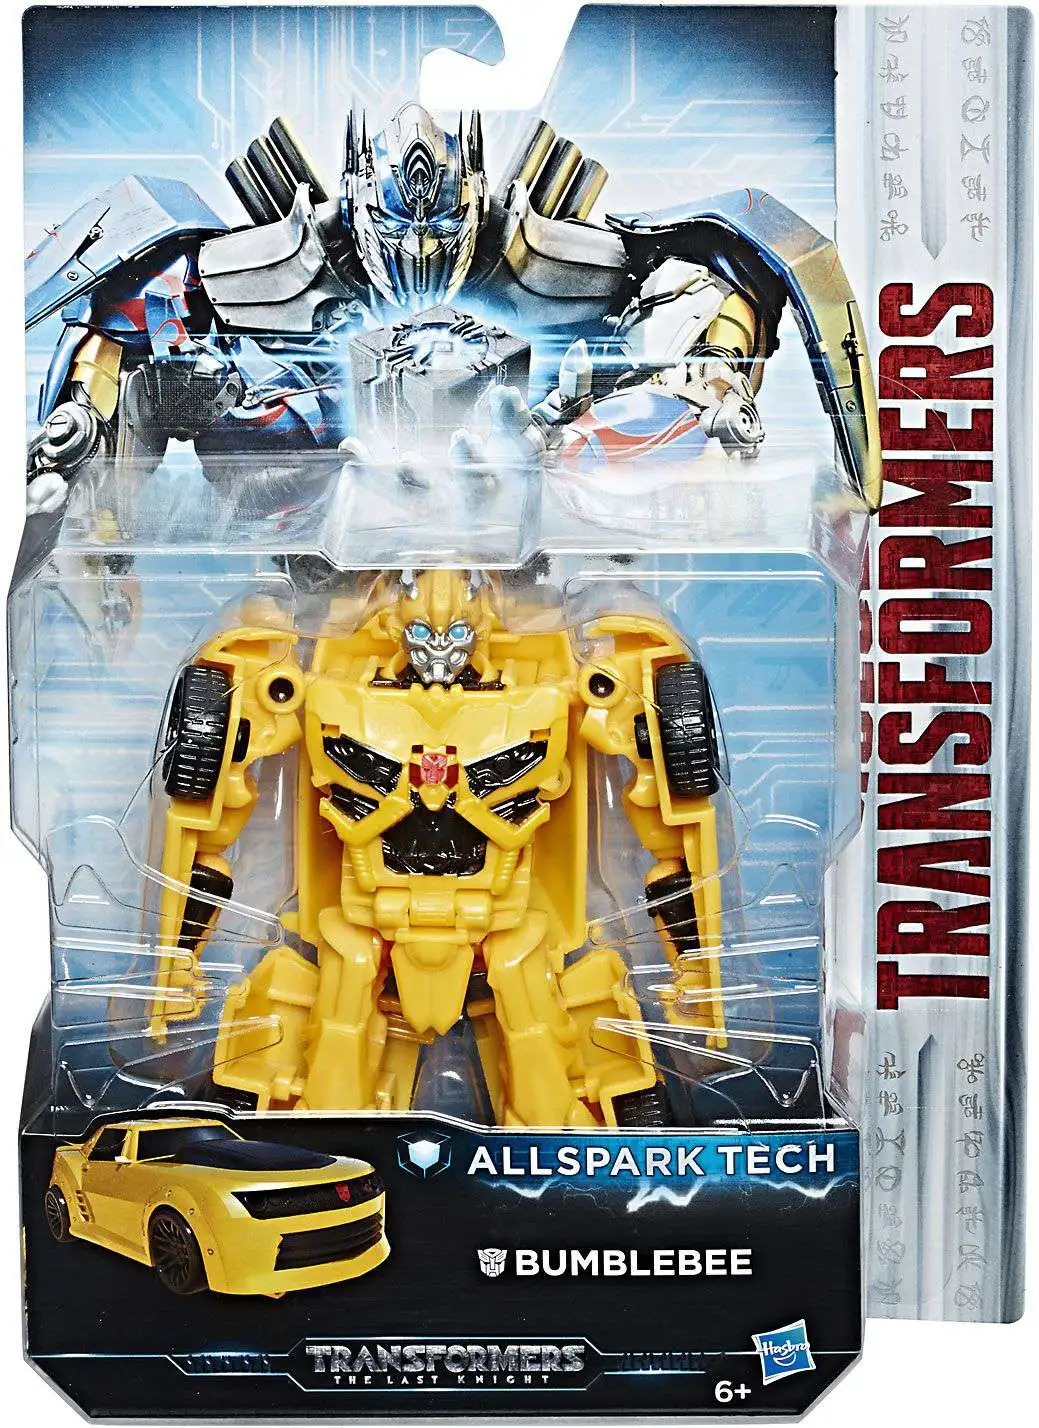 Hasbro Transformers Last Knight Allspark Tech W2 Deluxe Class Megatron NEW 